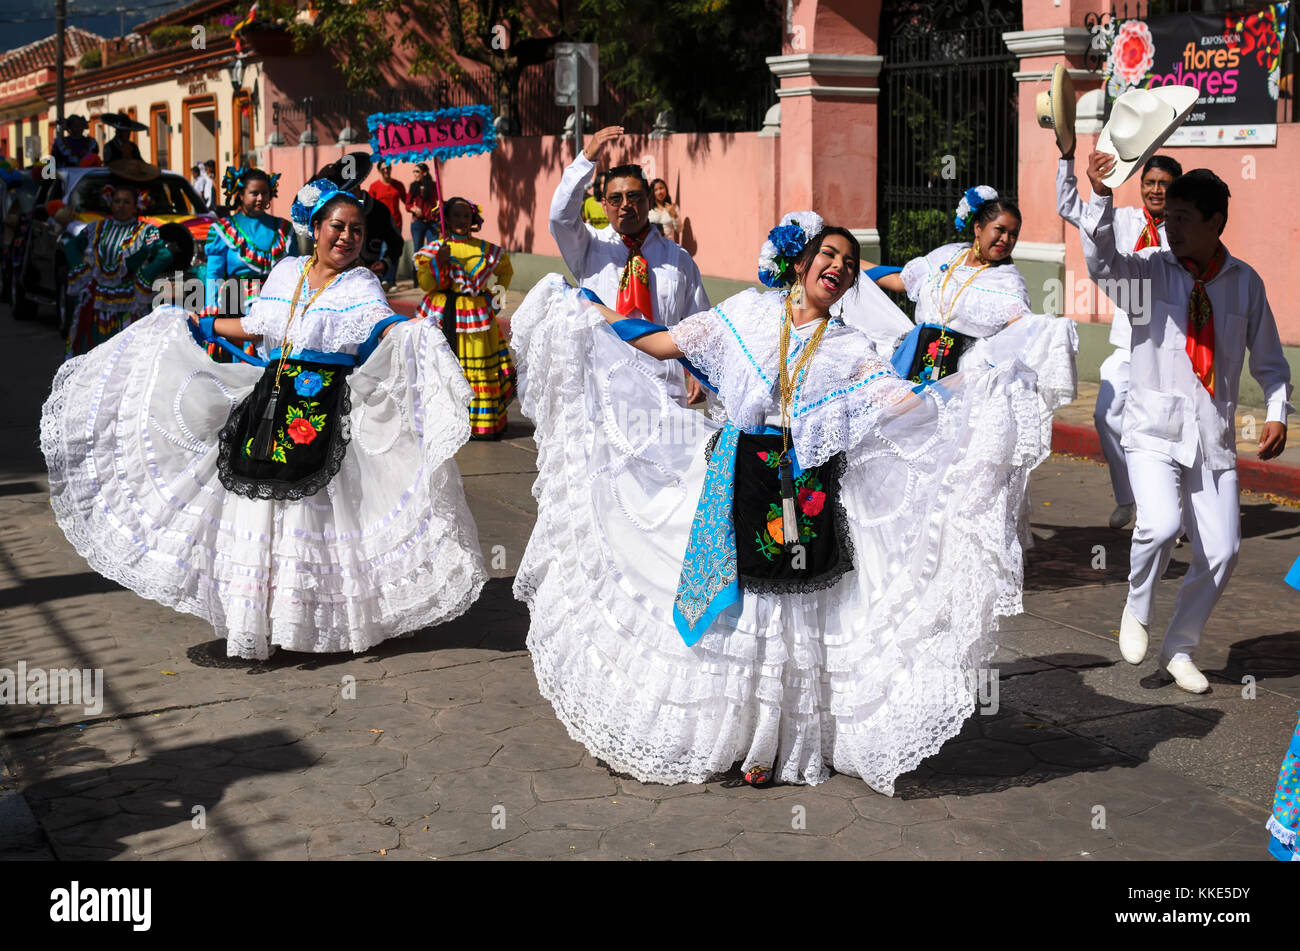 San Cristobal de las Casas, Mexiko, 13. Dezember 2015: die Menschen tanzen im traditionellen mexikanischen Kleid aus Veracruz Zustand Stockfoto